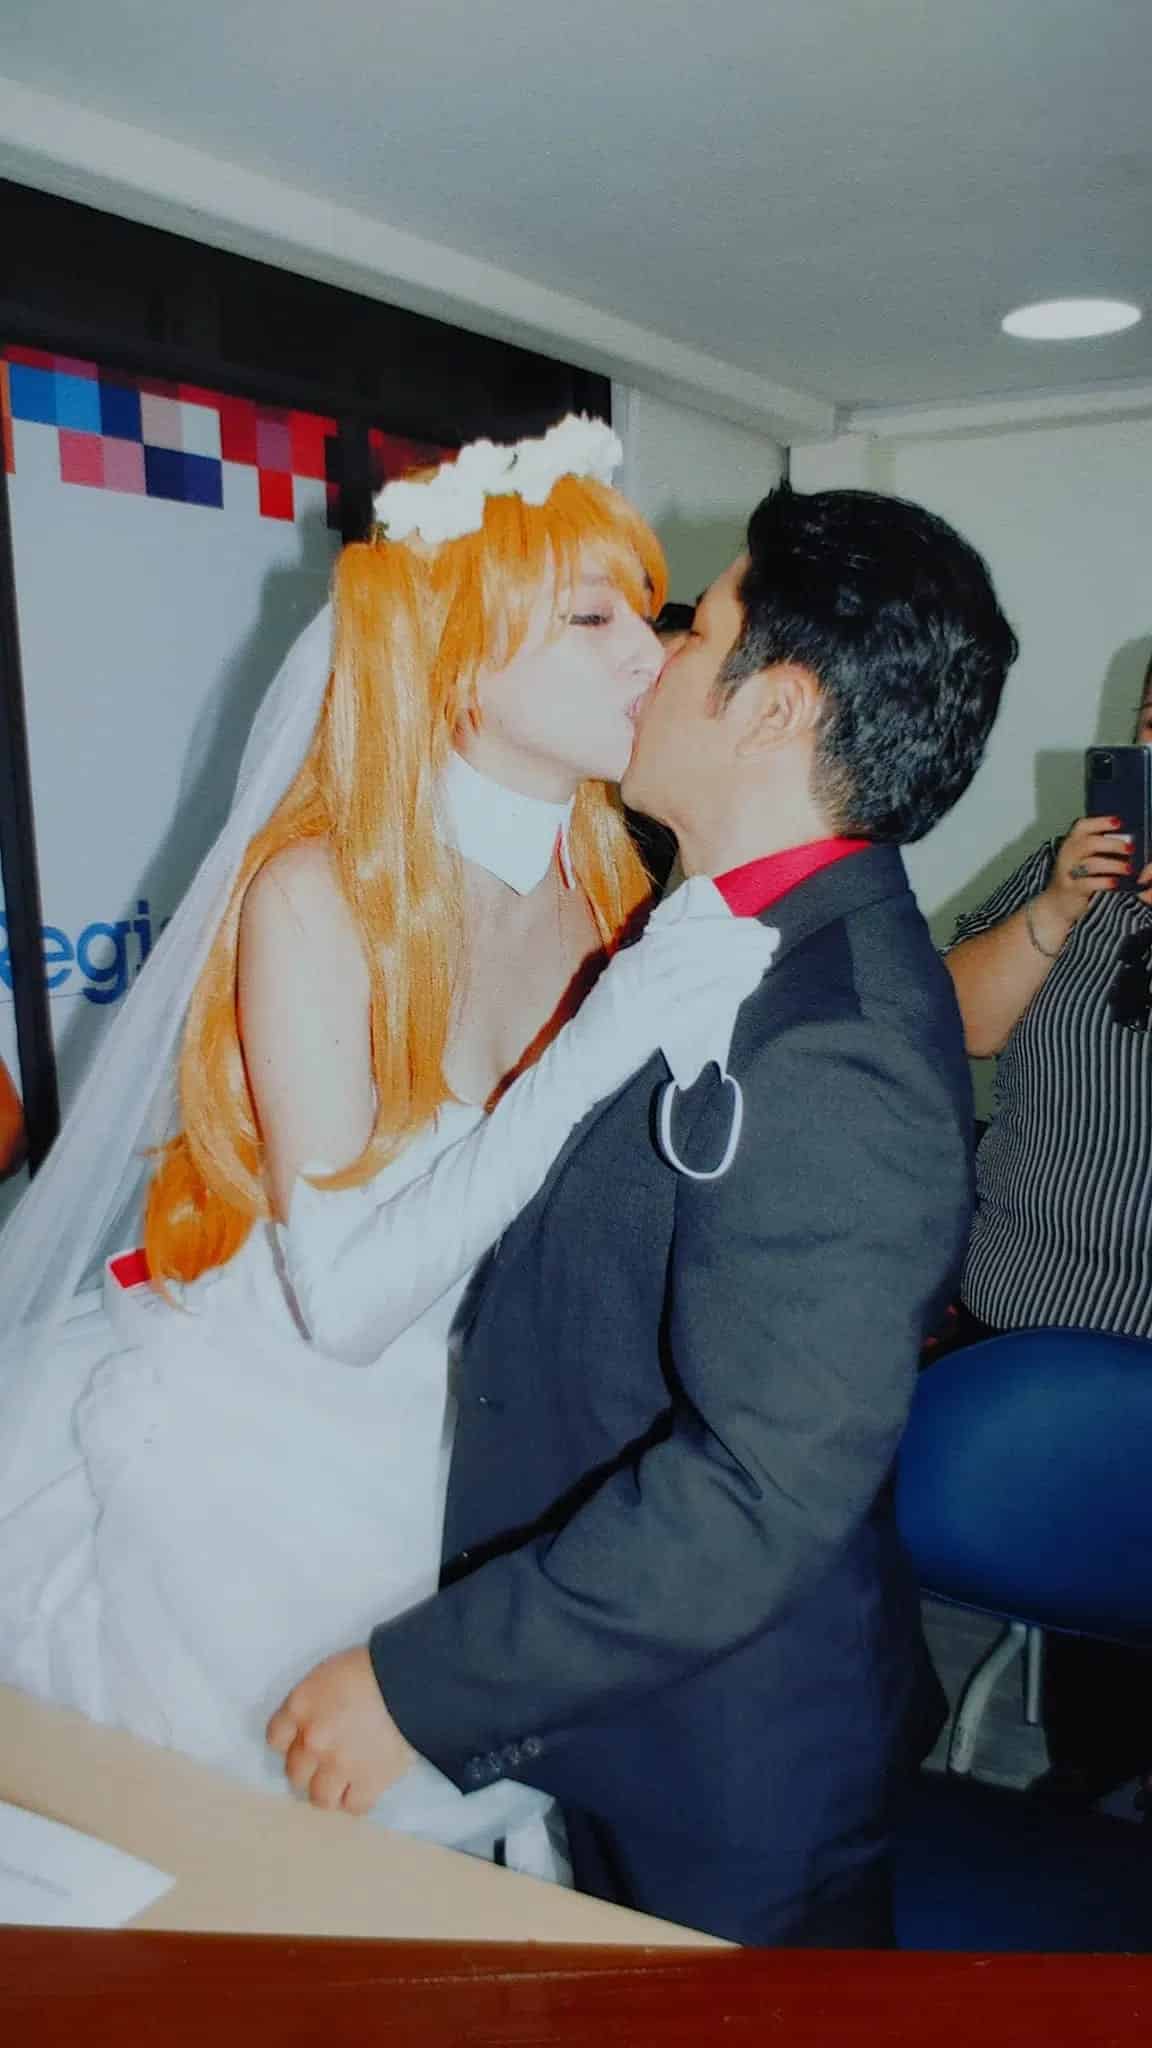 Evangelion Una chica se casa con un cosplay de Asuka y se vuelve viral 5 min